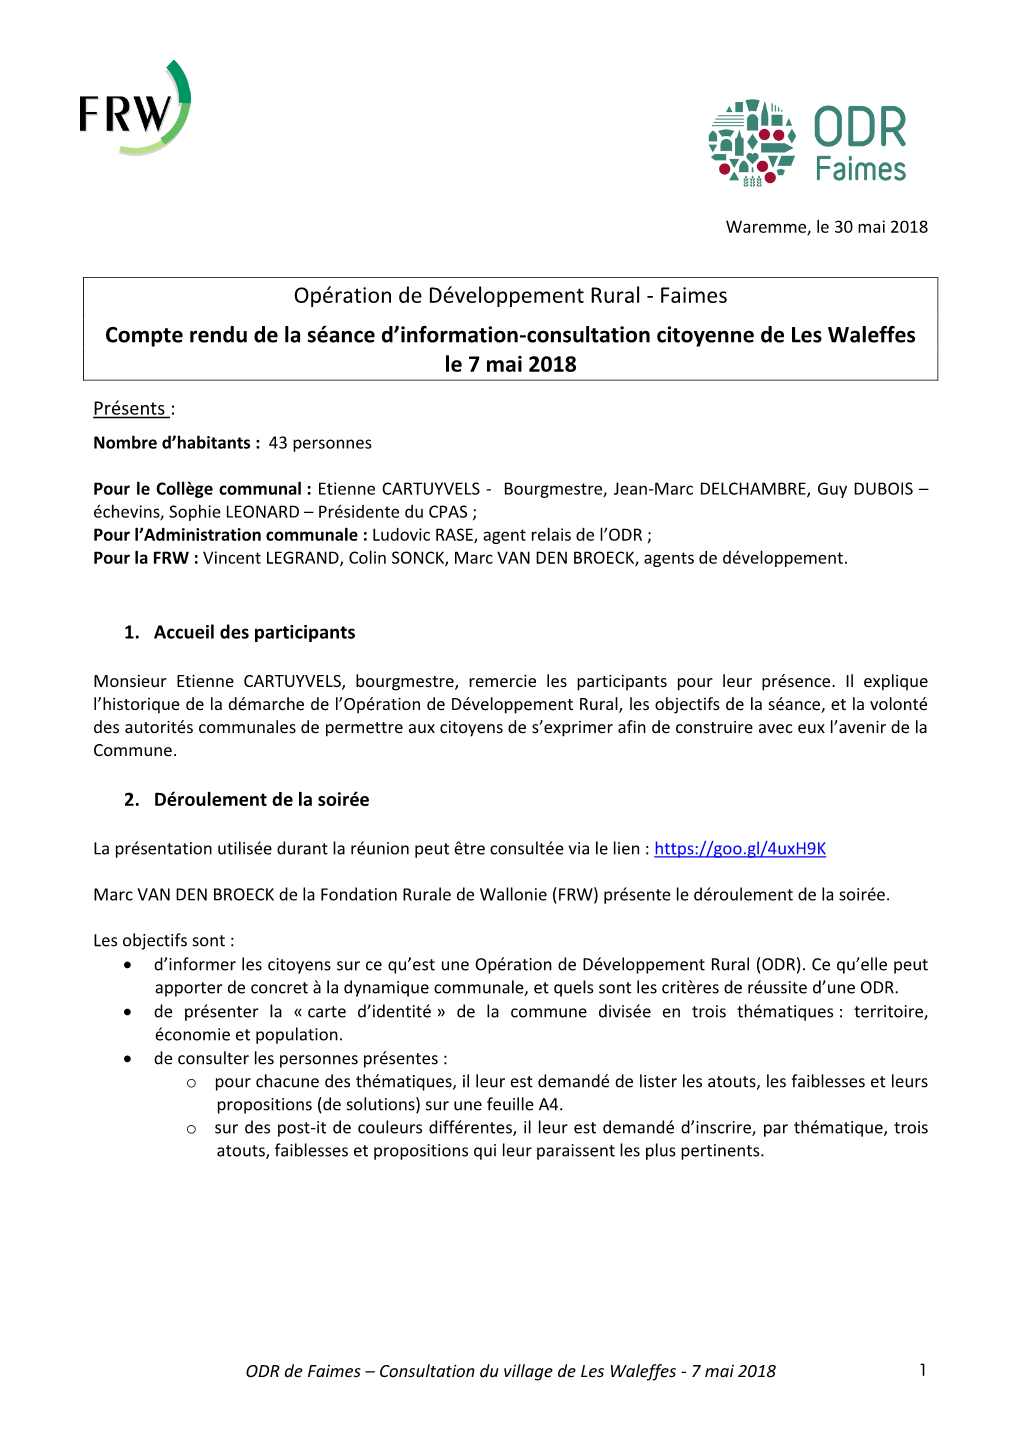 Opération De Développement Rural - Faimes Compte Rendu De La Séance D’Information-Consultation Citoyenne De Les Waleffes Le 7 Mai 2018